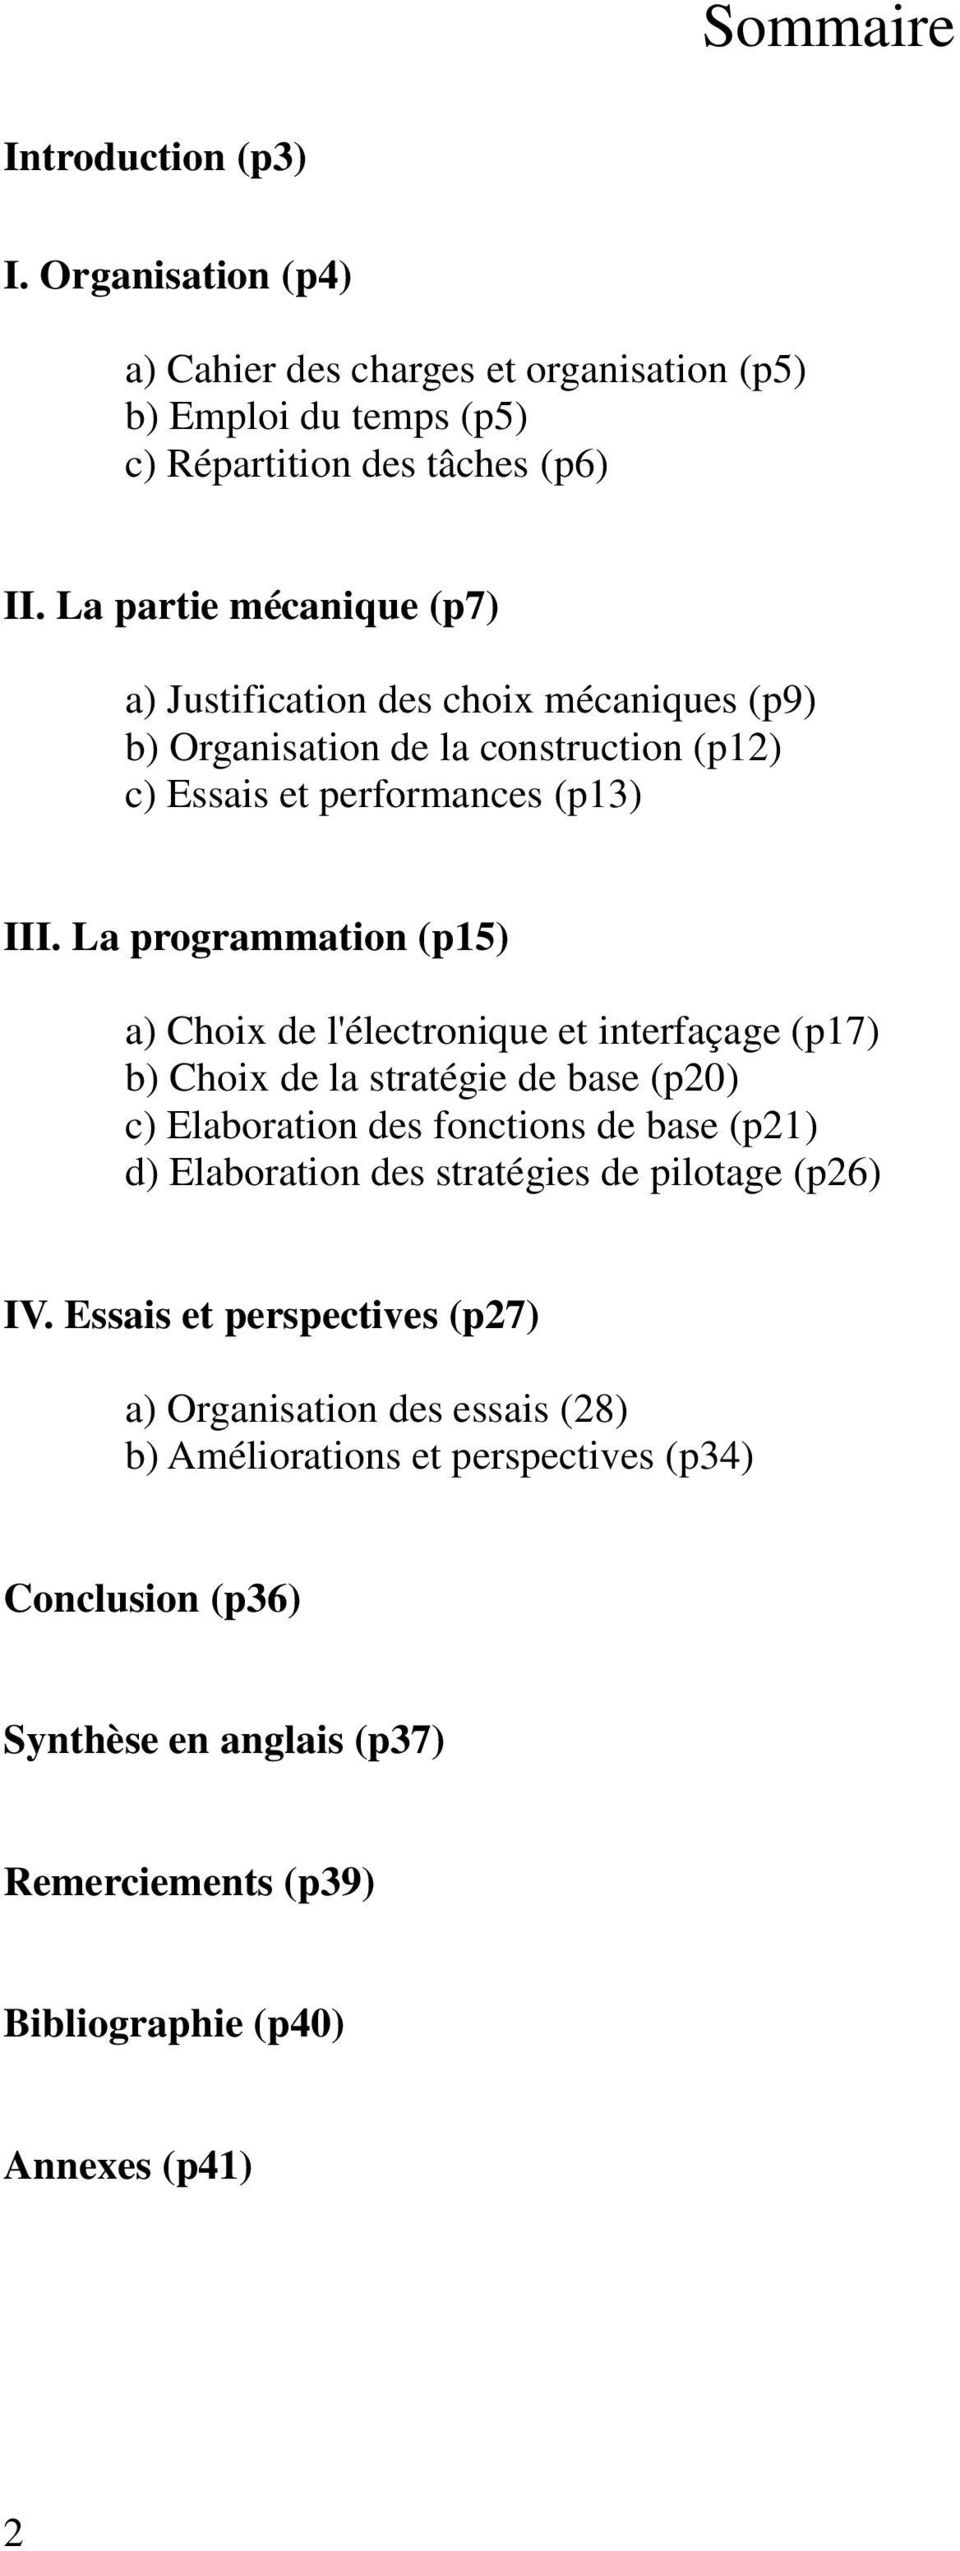 La programmation (p15) a) Choix de l'électronique et interfaçage (p17) b) Choix de la stratégie de base (p20) c) Elaboration des fonctions de base (p21) d) Elaboration des